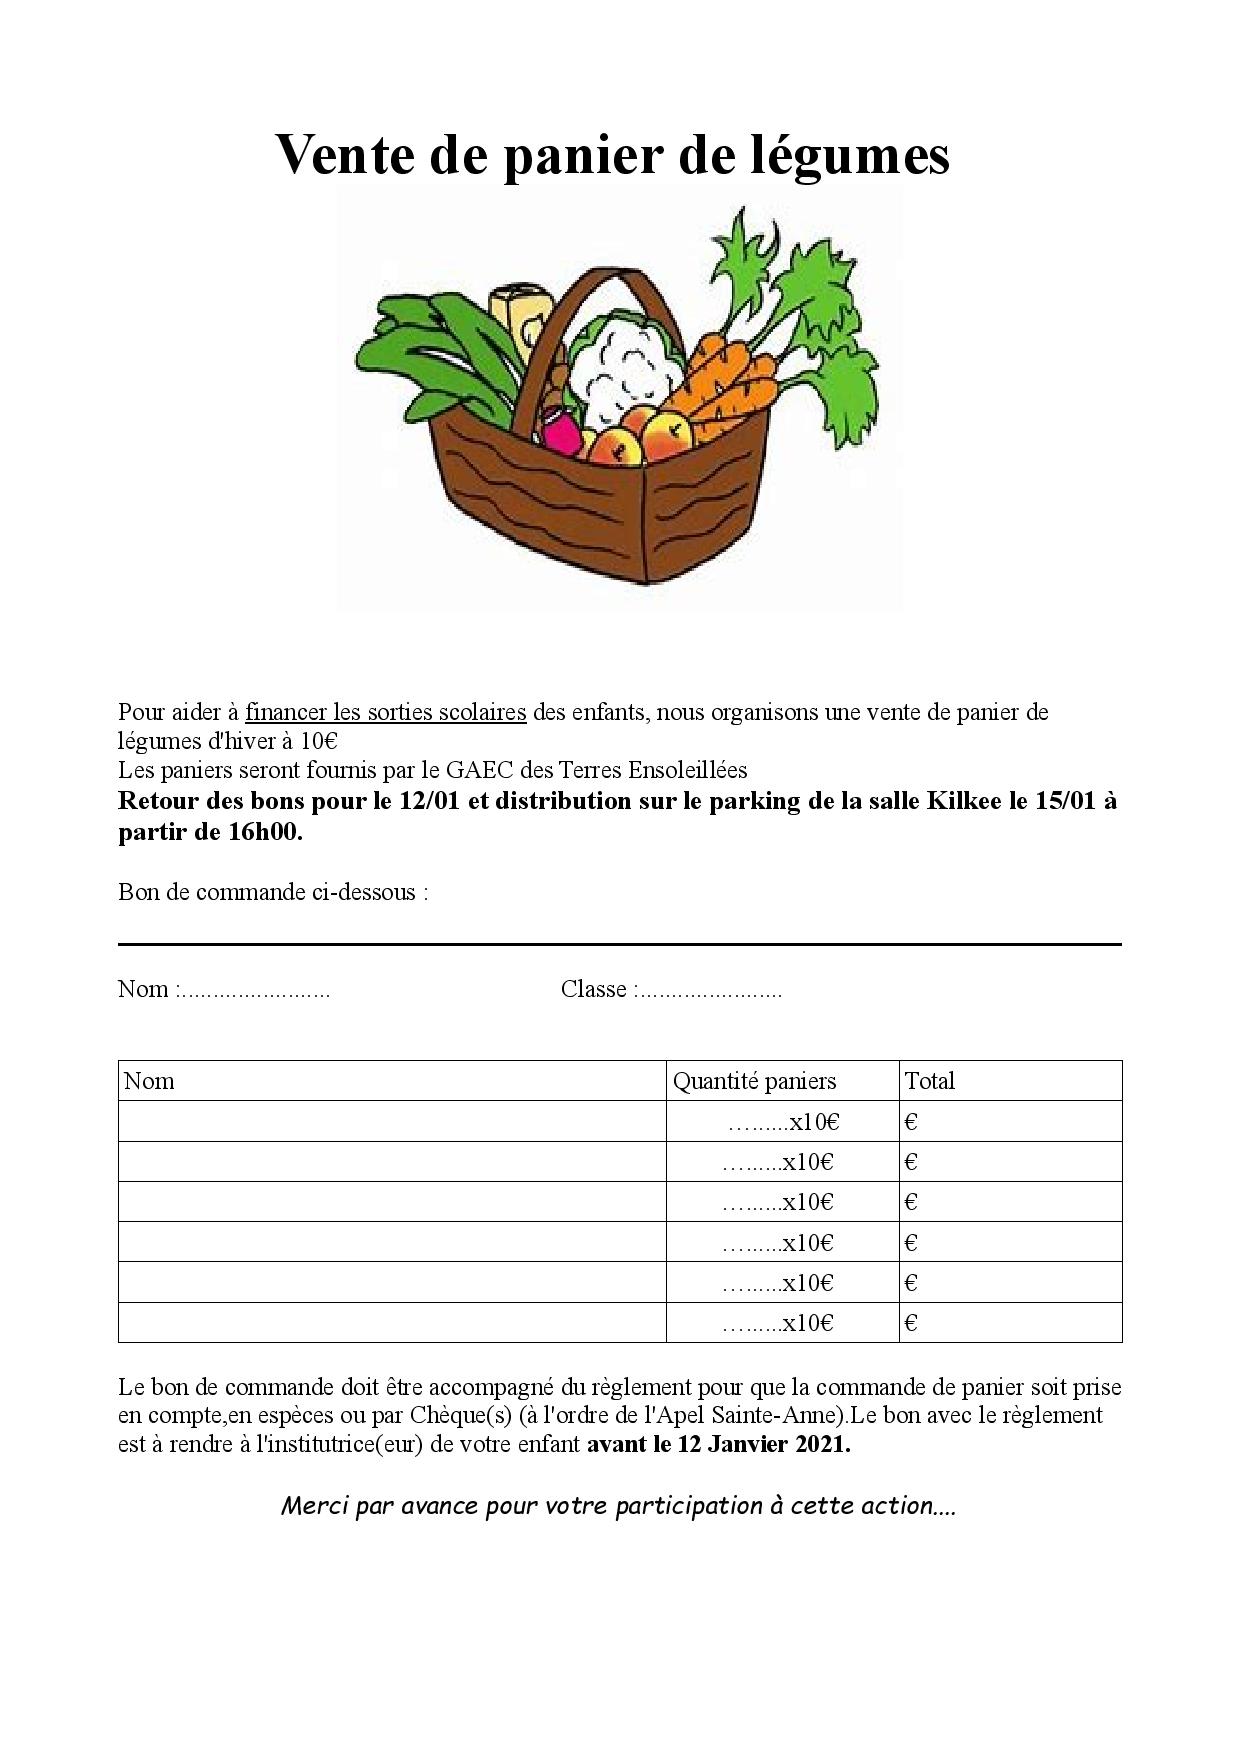 APEL vente de paniers de légumes - Ecole Sainte Anne